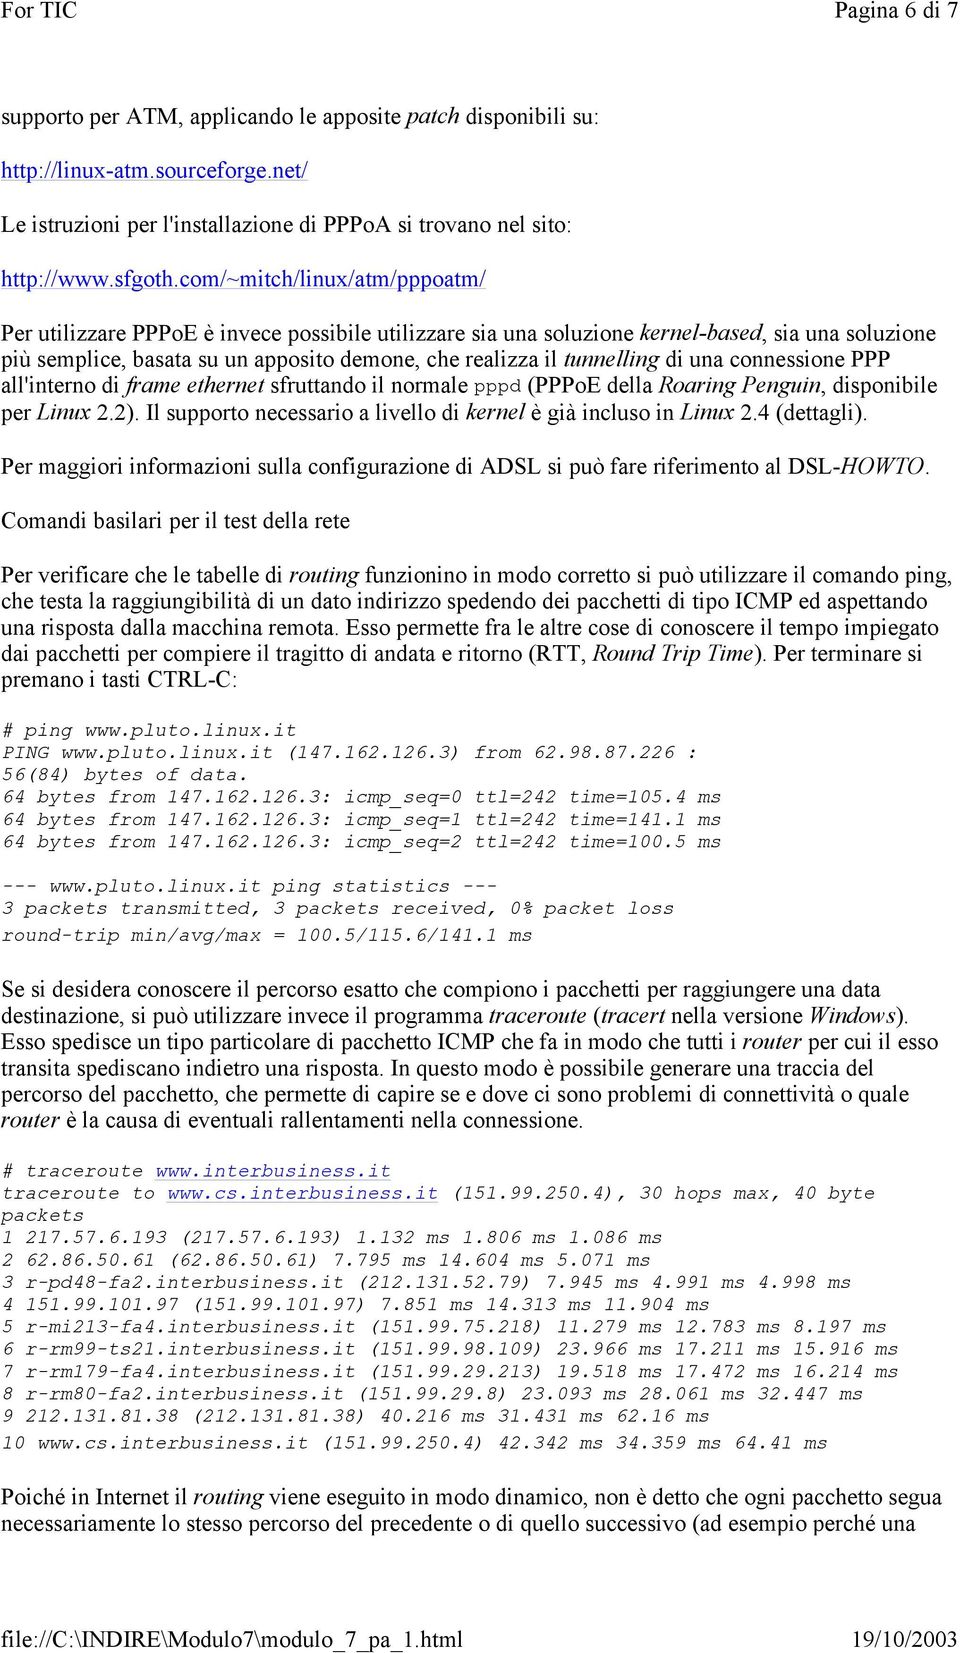 tunnelling di una connessione PPP all'interno di frame ethernet sfruttando il normale pppd (PPPoE della Roaring Penguin, disponibile per Linux 2.2).